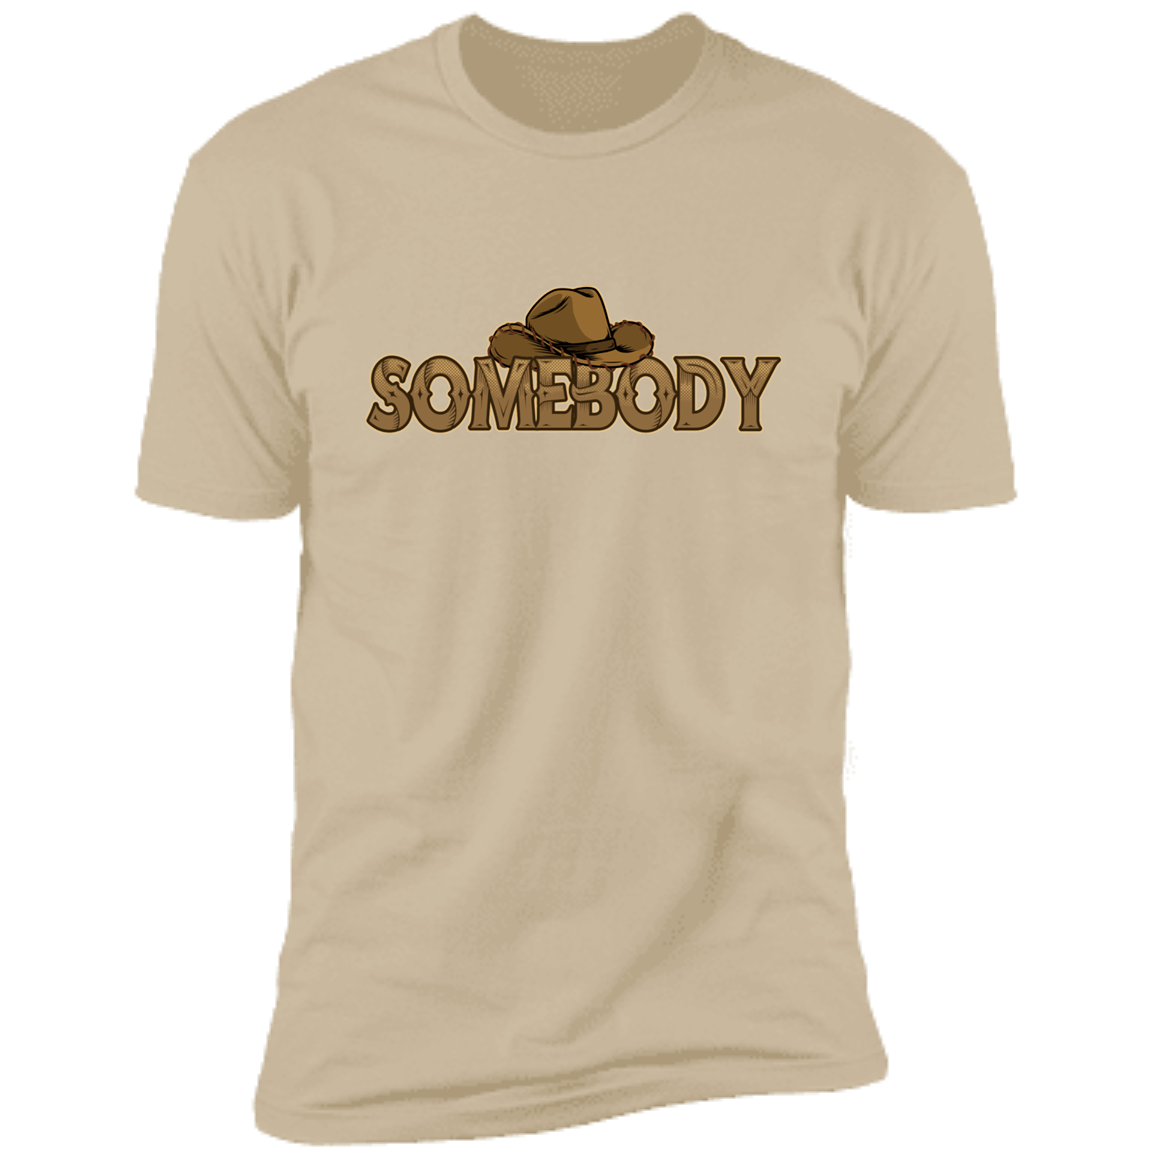 Somebody's Problem & Somebody Deluxe Soft Cream Shirts